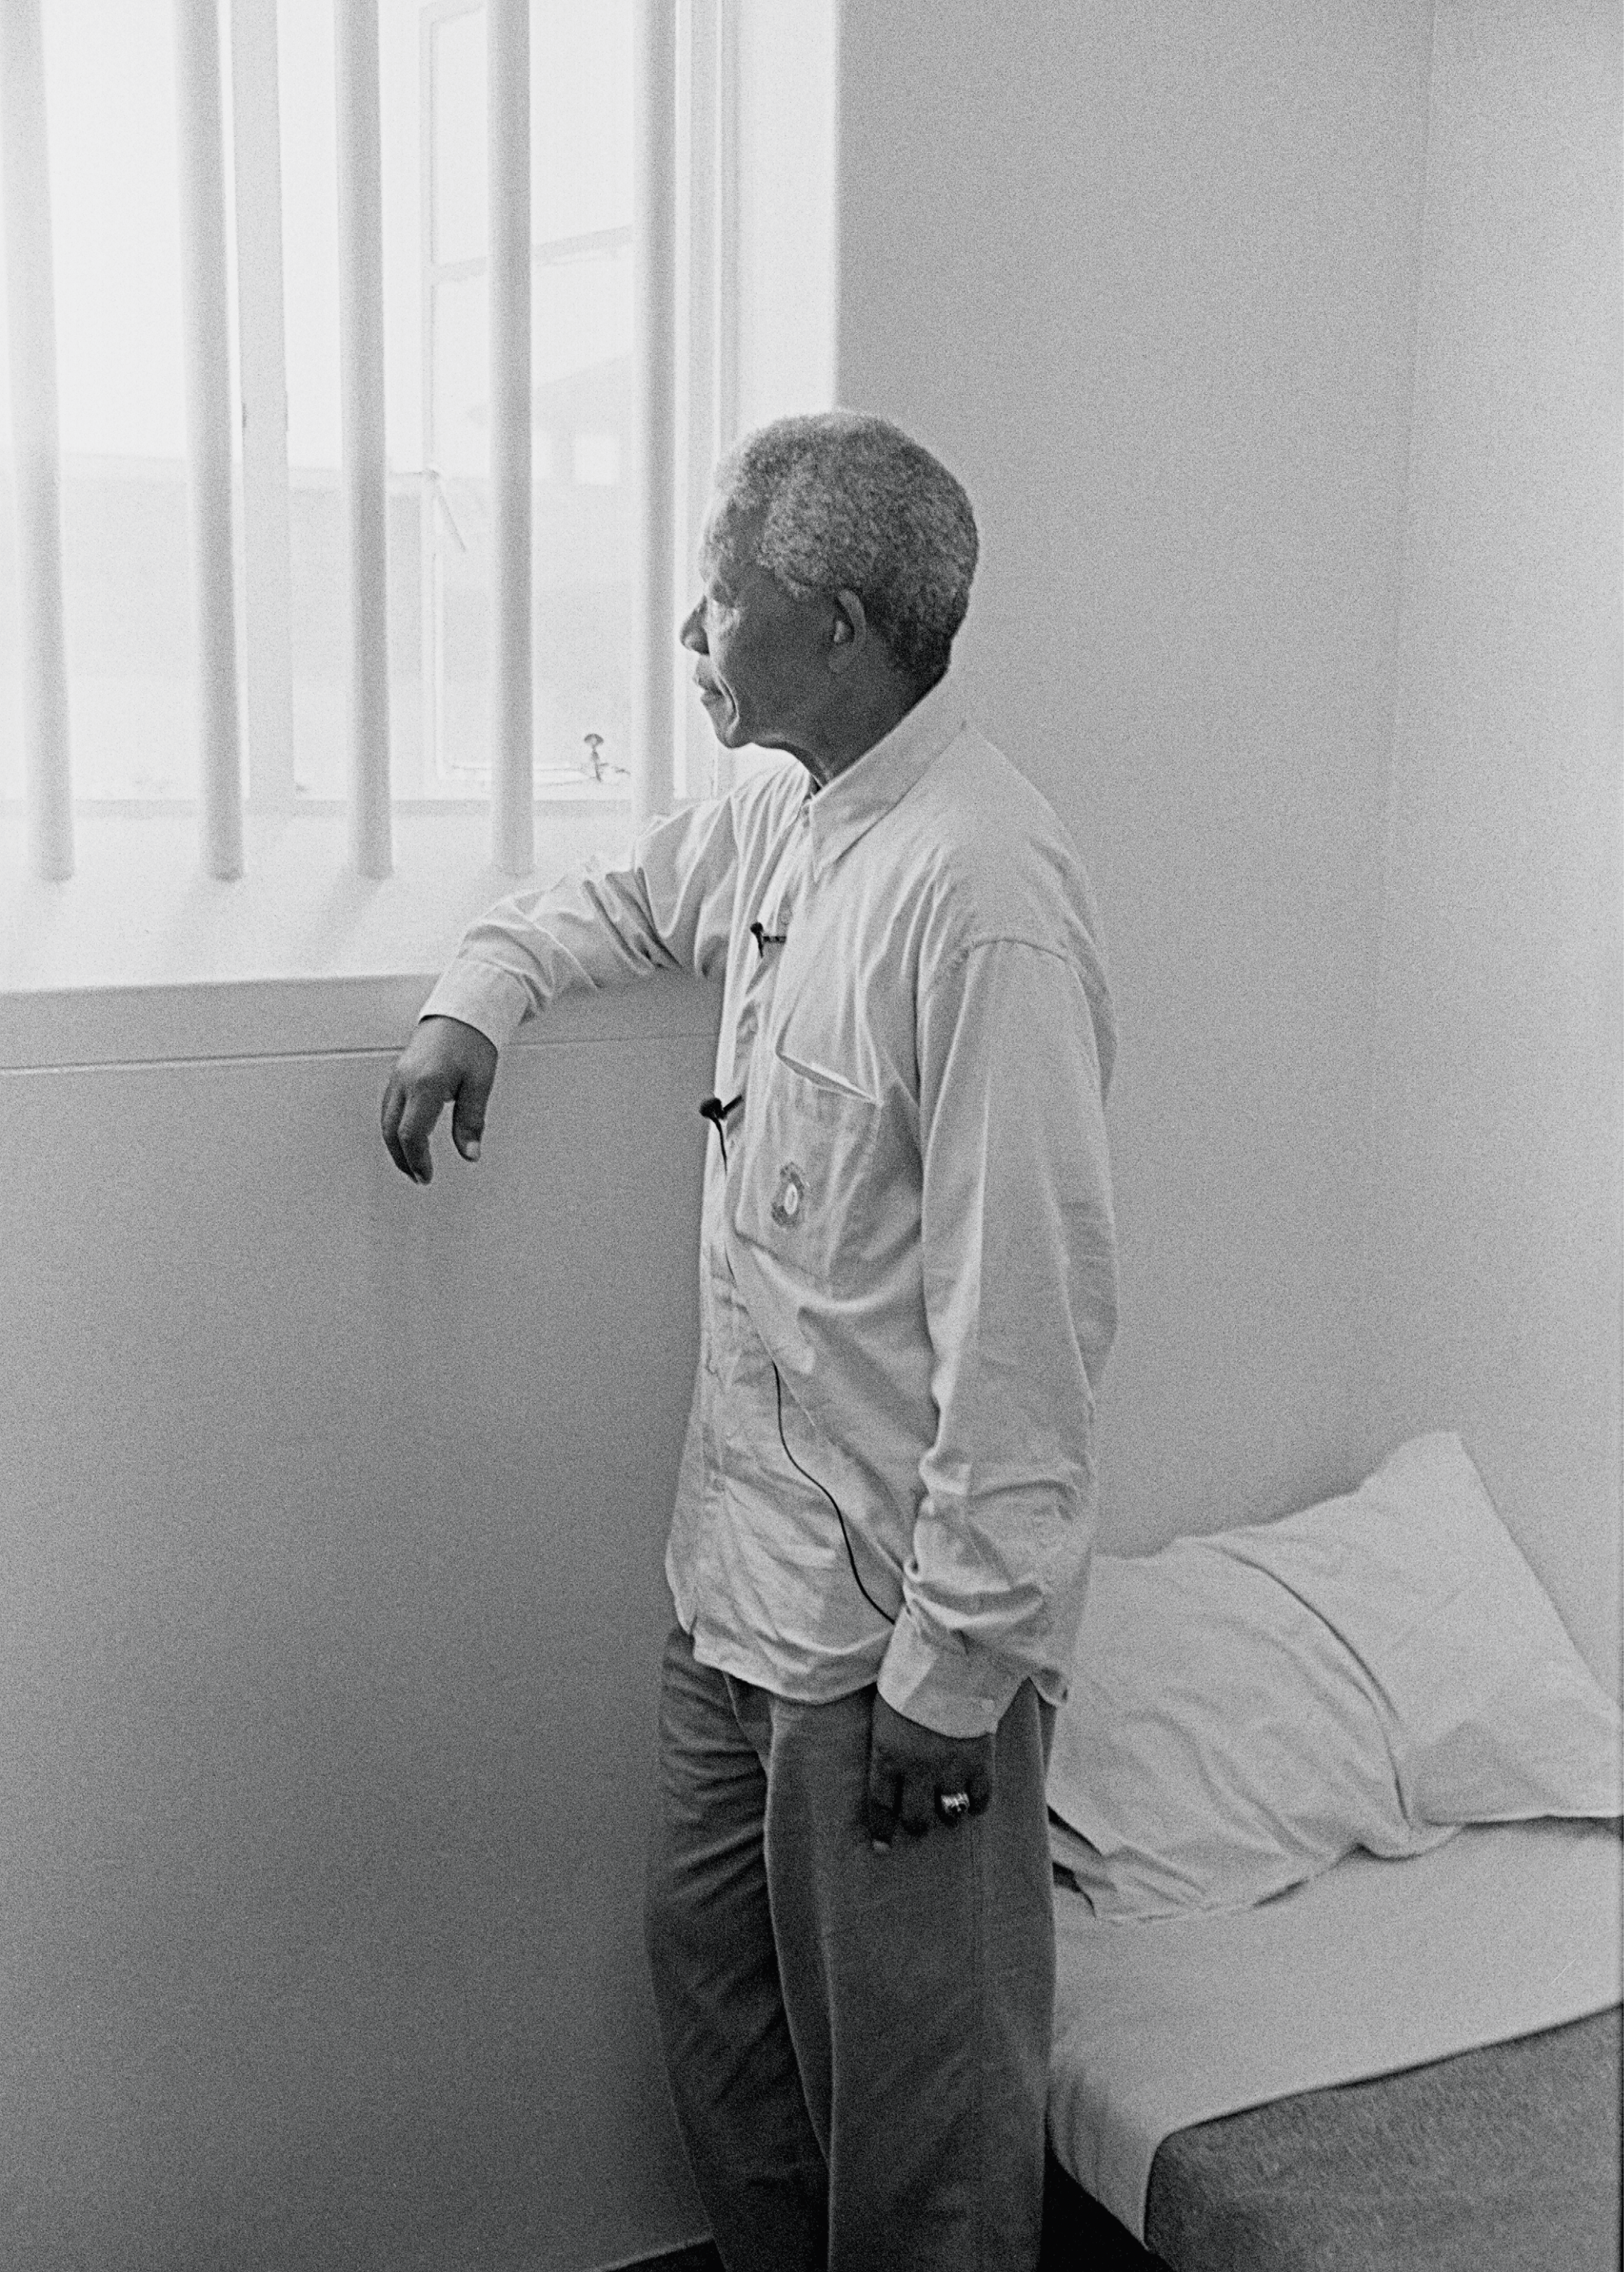 Nelson Mandela a passé 27 ans dans les prisons de l’Afrique du Sud pour s’être
opposé à la ségrégation raciale, photographie prise par Jürgen Schadeberg en 1994.